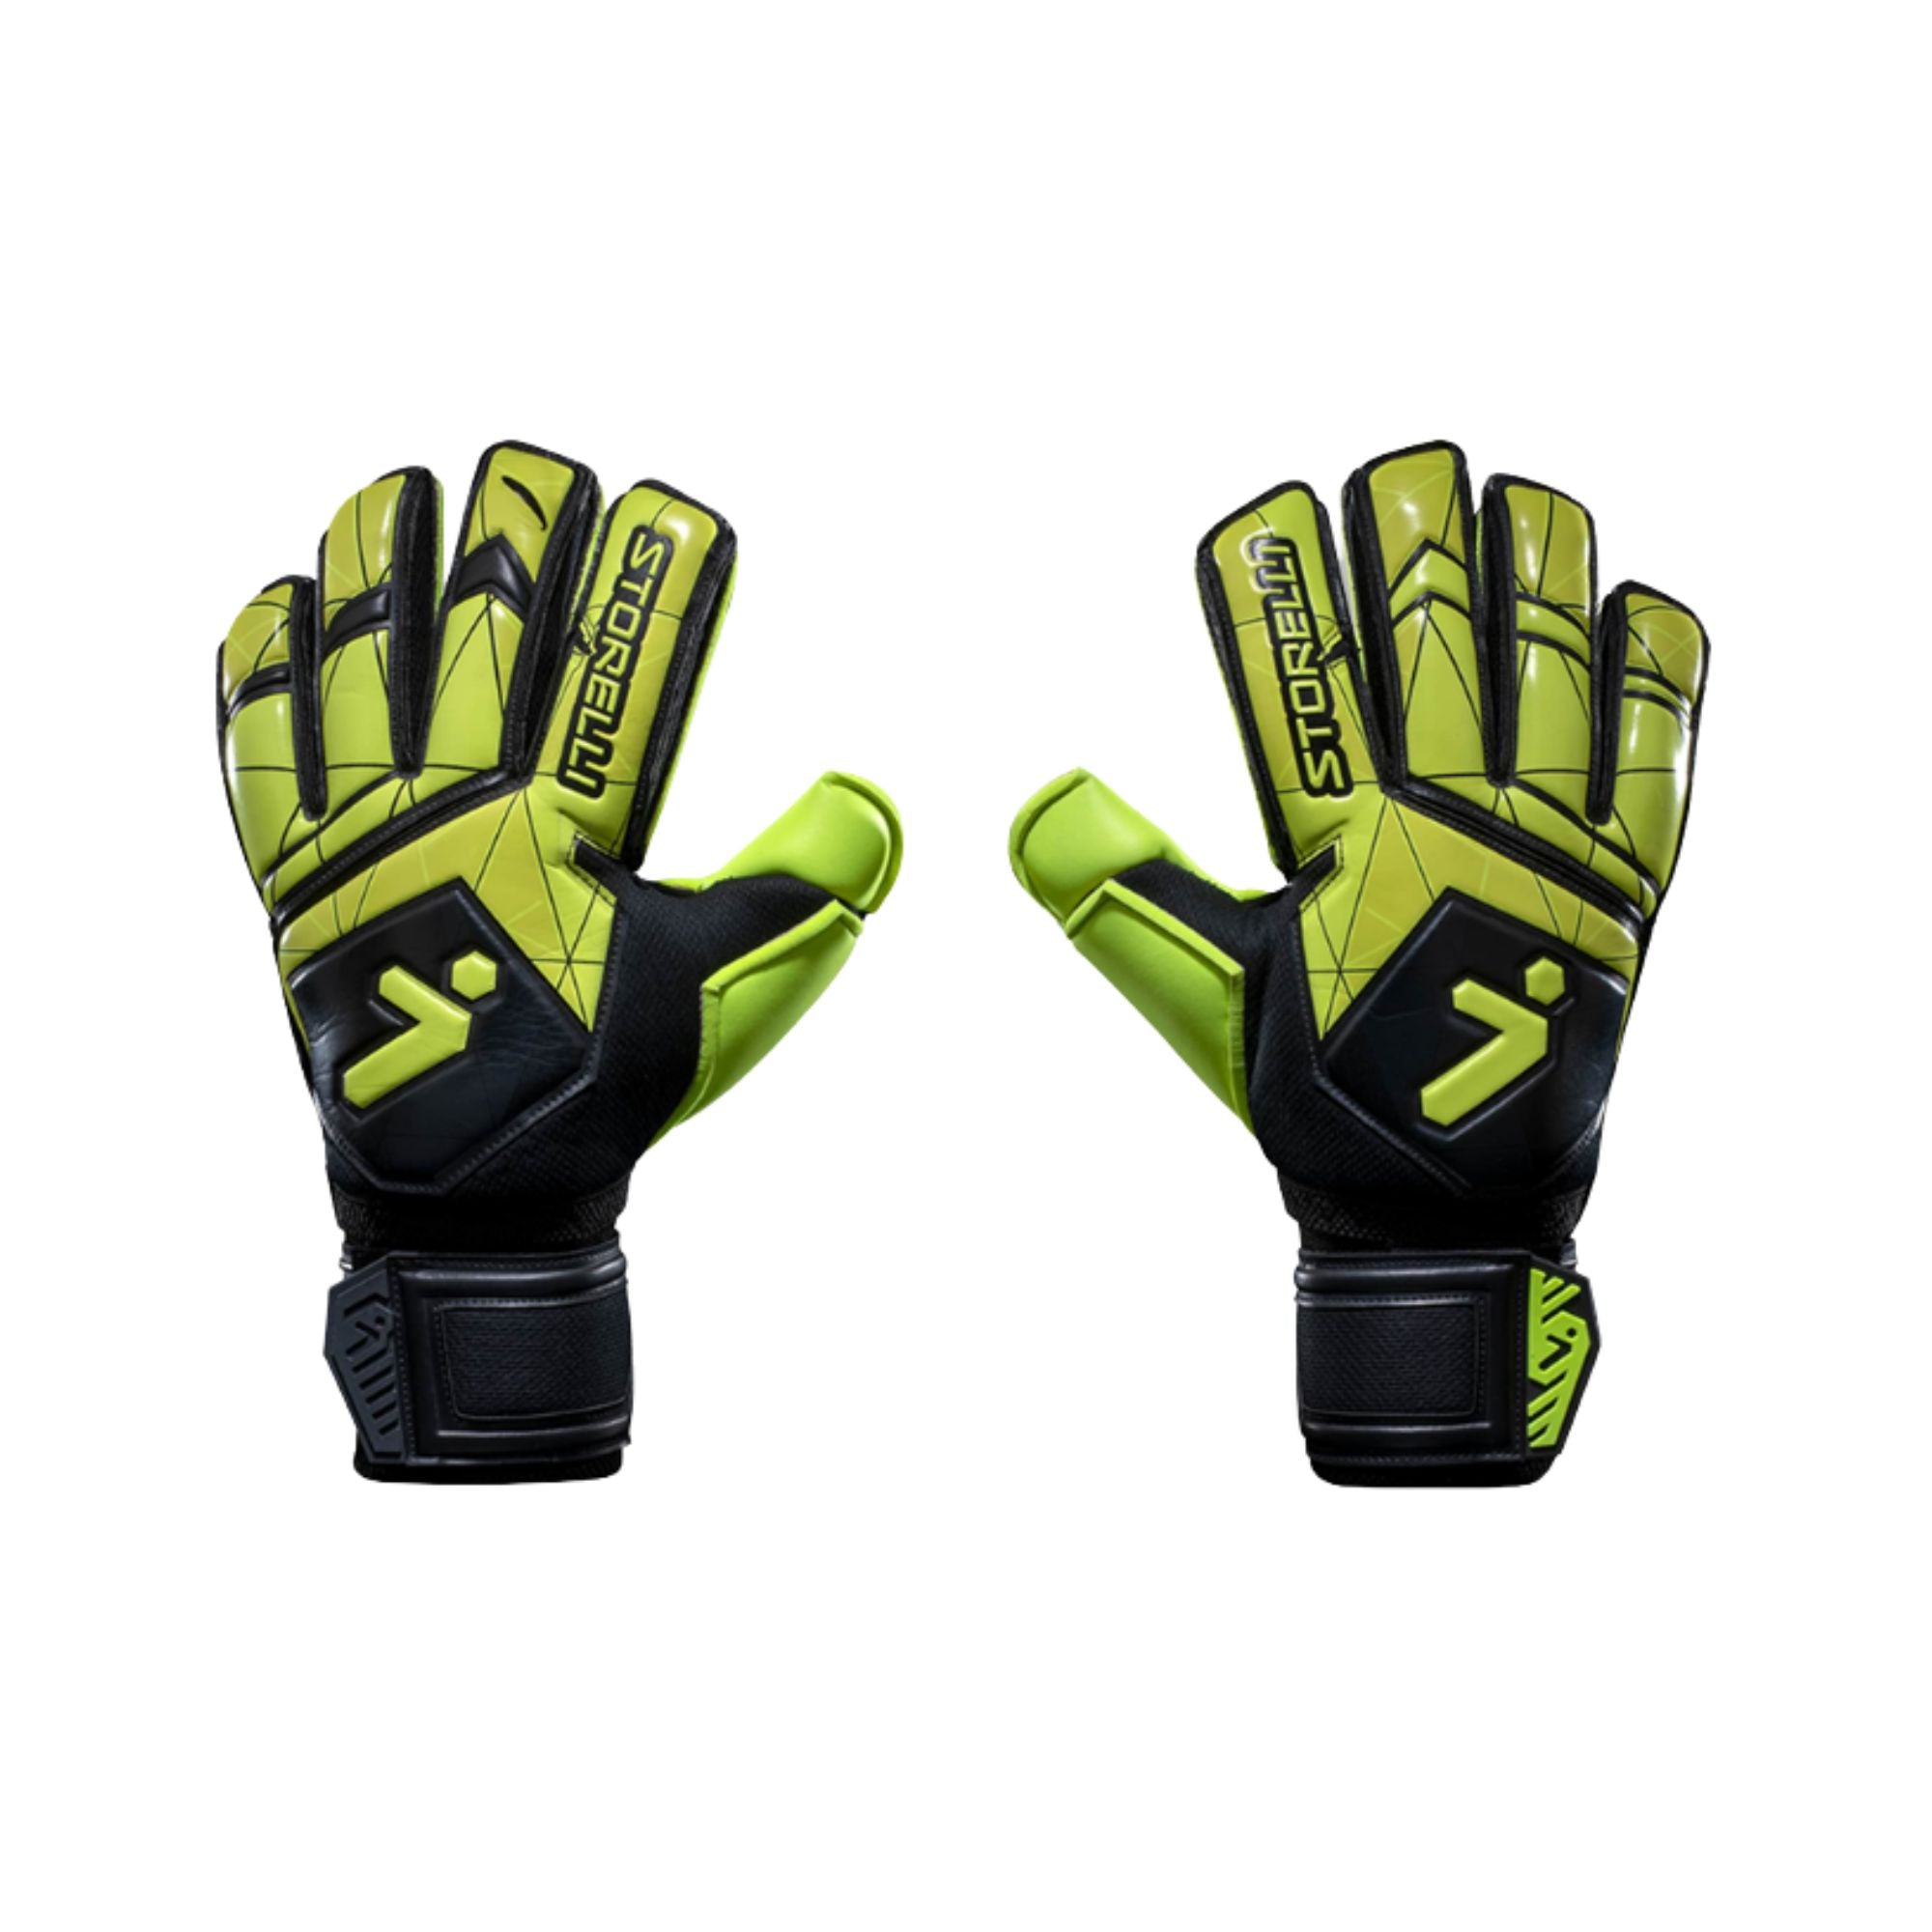 Goalkeeper Gloves - Gladiator Recruit v3 by Storelli - ITASPORT